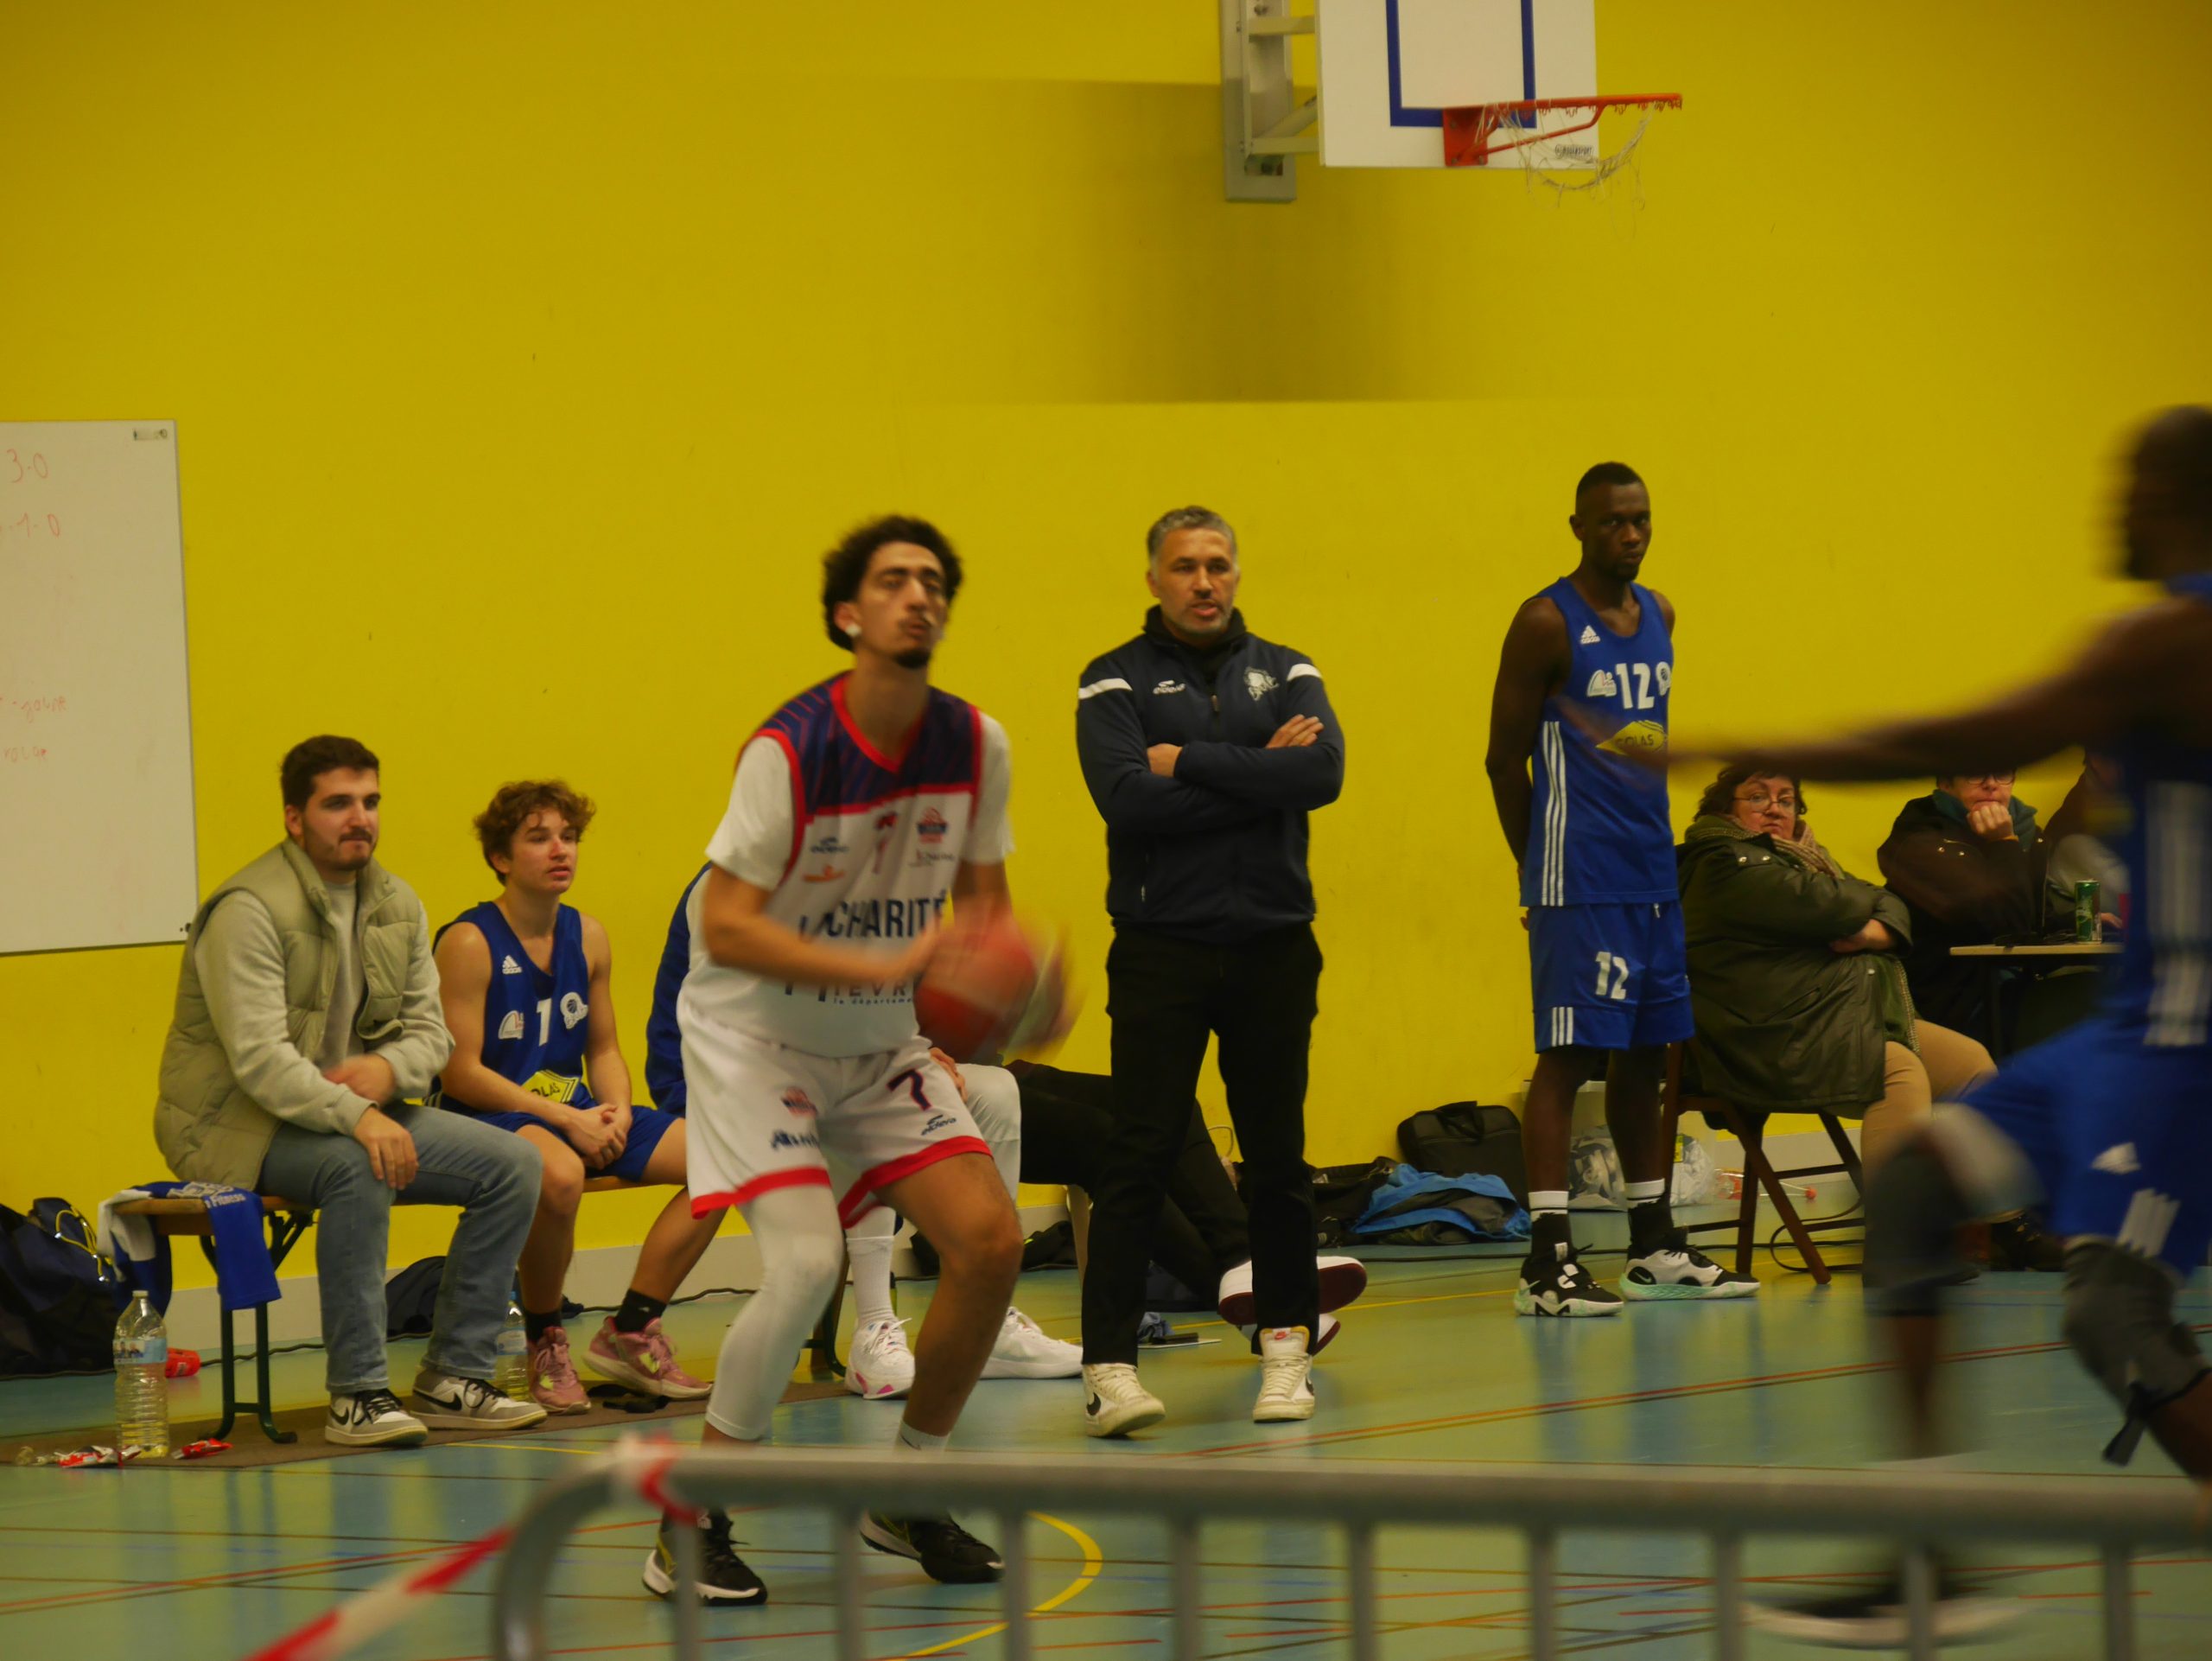 Prénationale Basket BMB La Charité 2